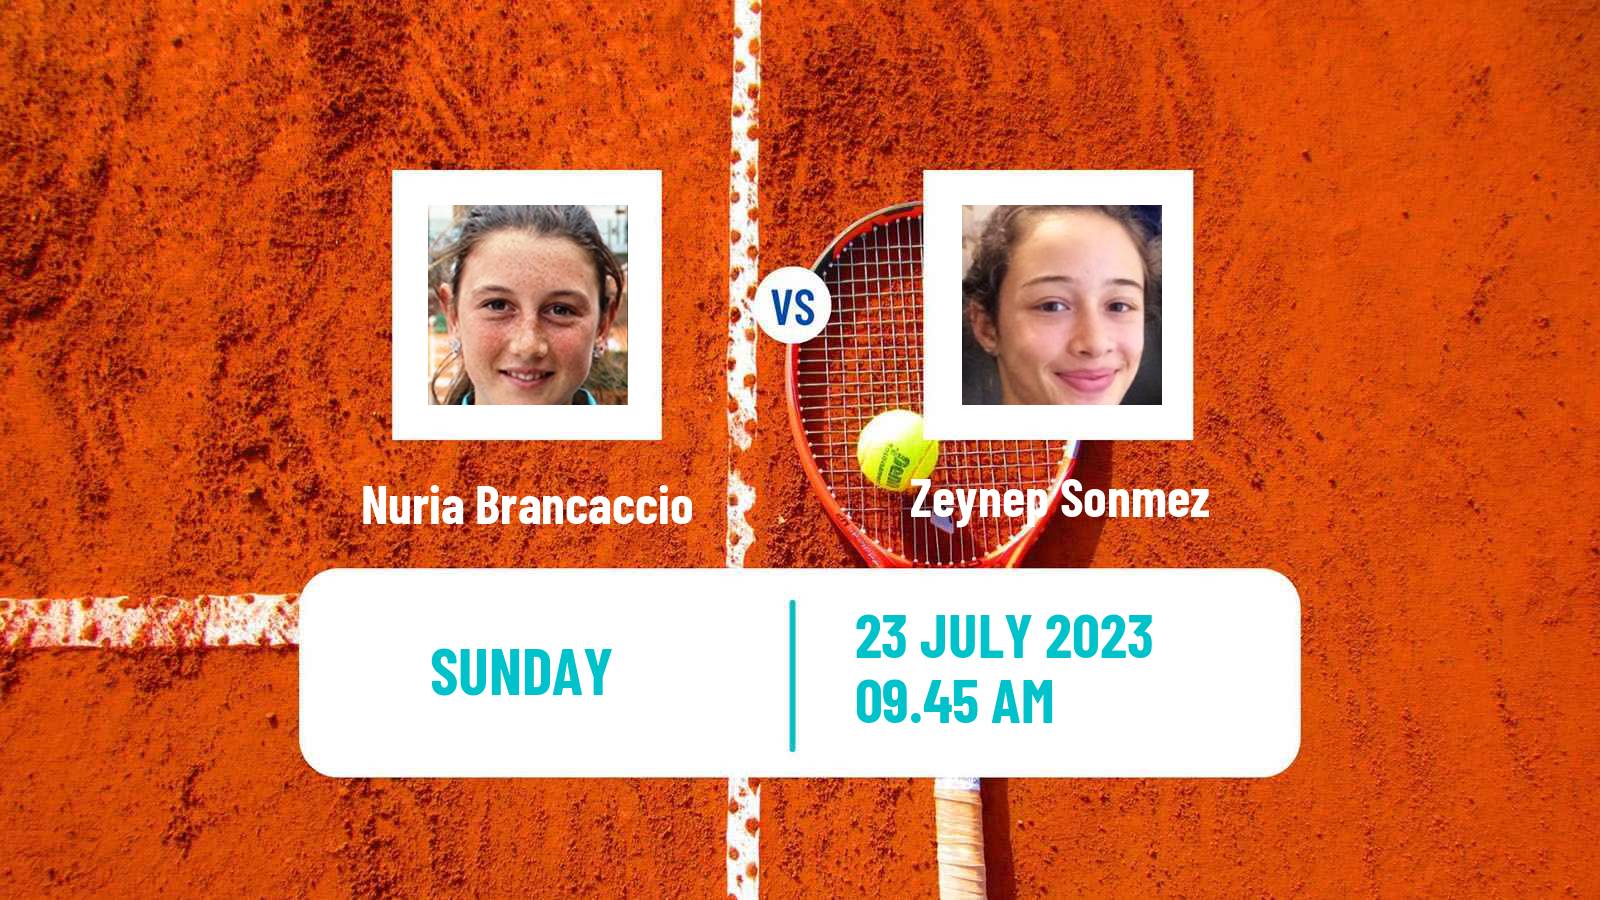 Tennis WTA Hamburg Nuria Brancaccio - Zeynep Sonmez